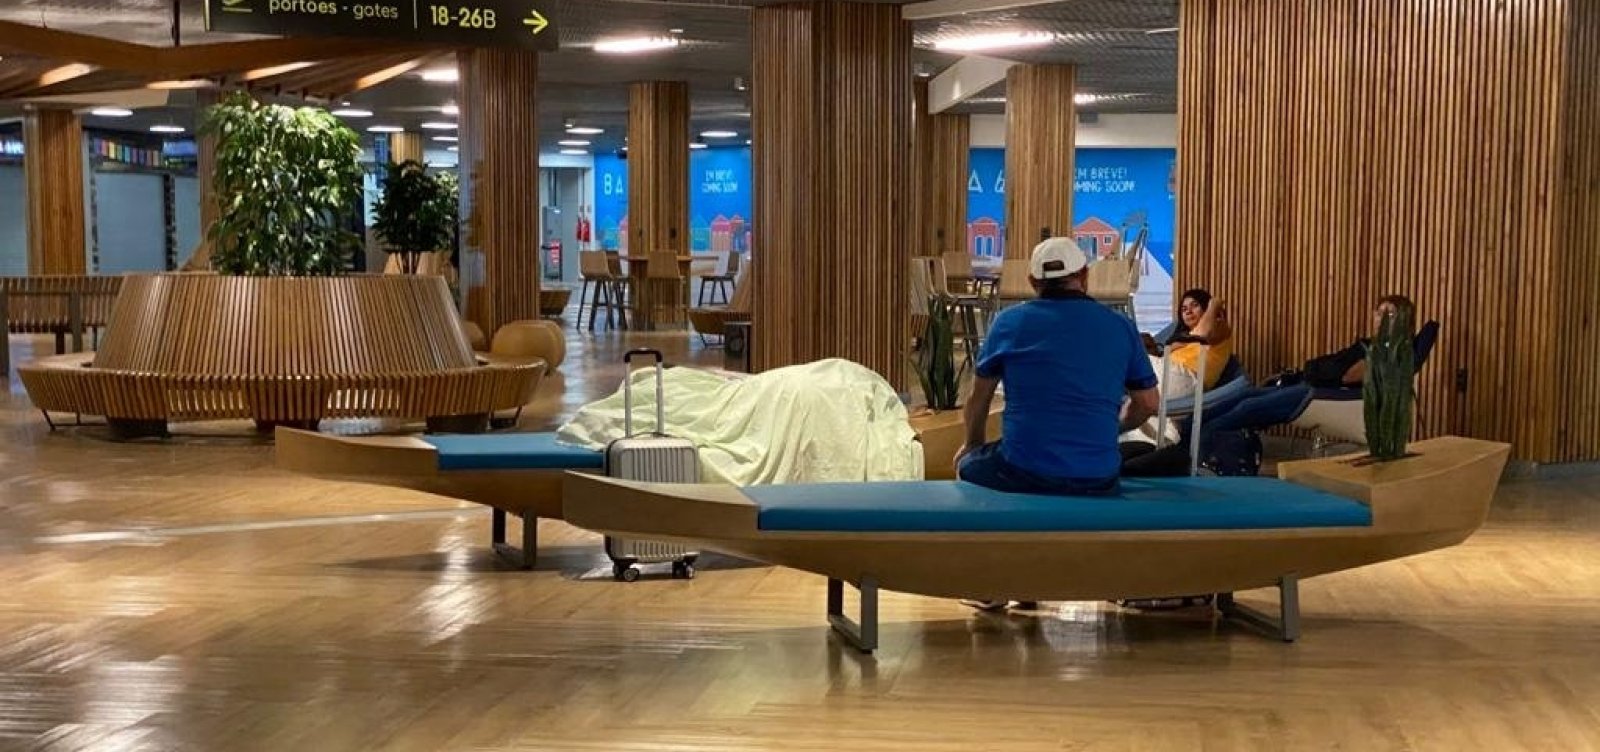 Após inauguração de obras, passageiros dormem em bancos do aeroporto de Salvador